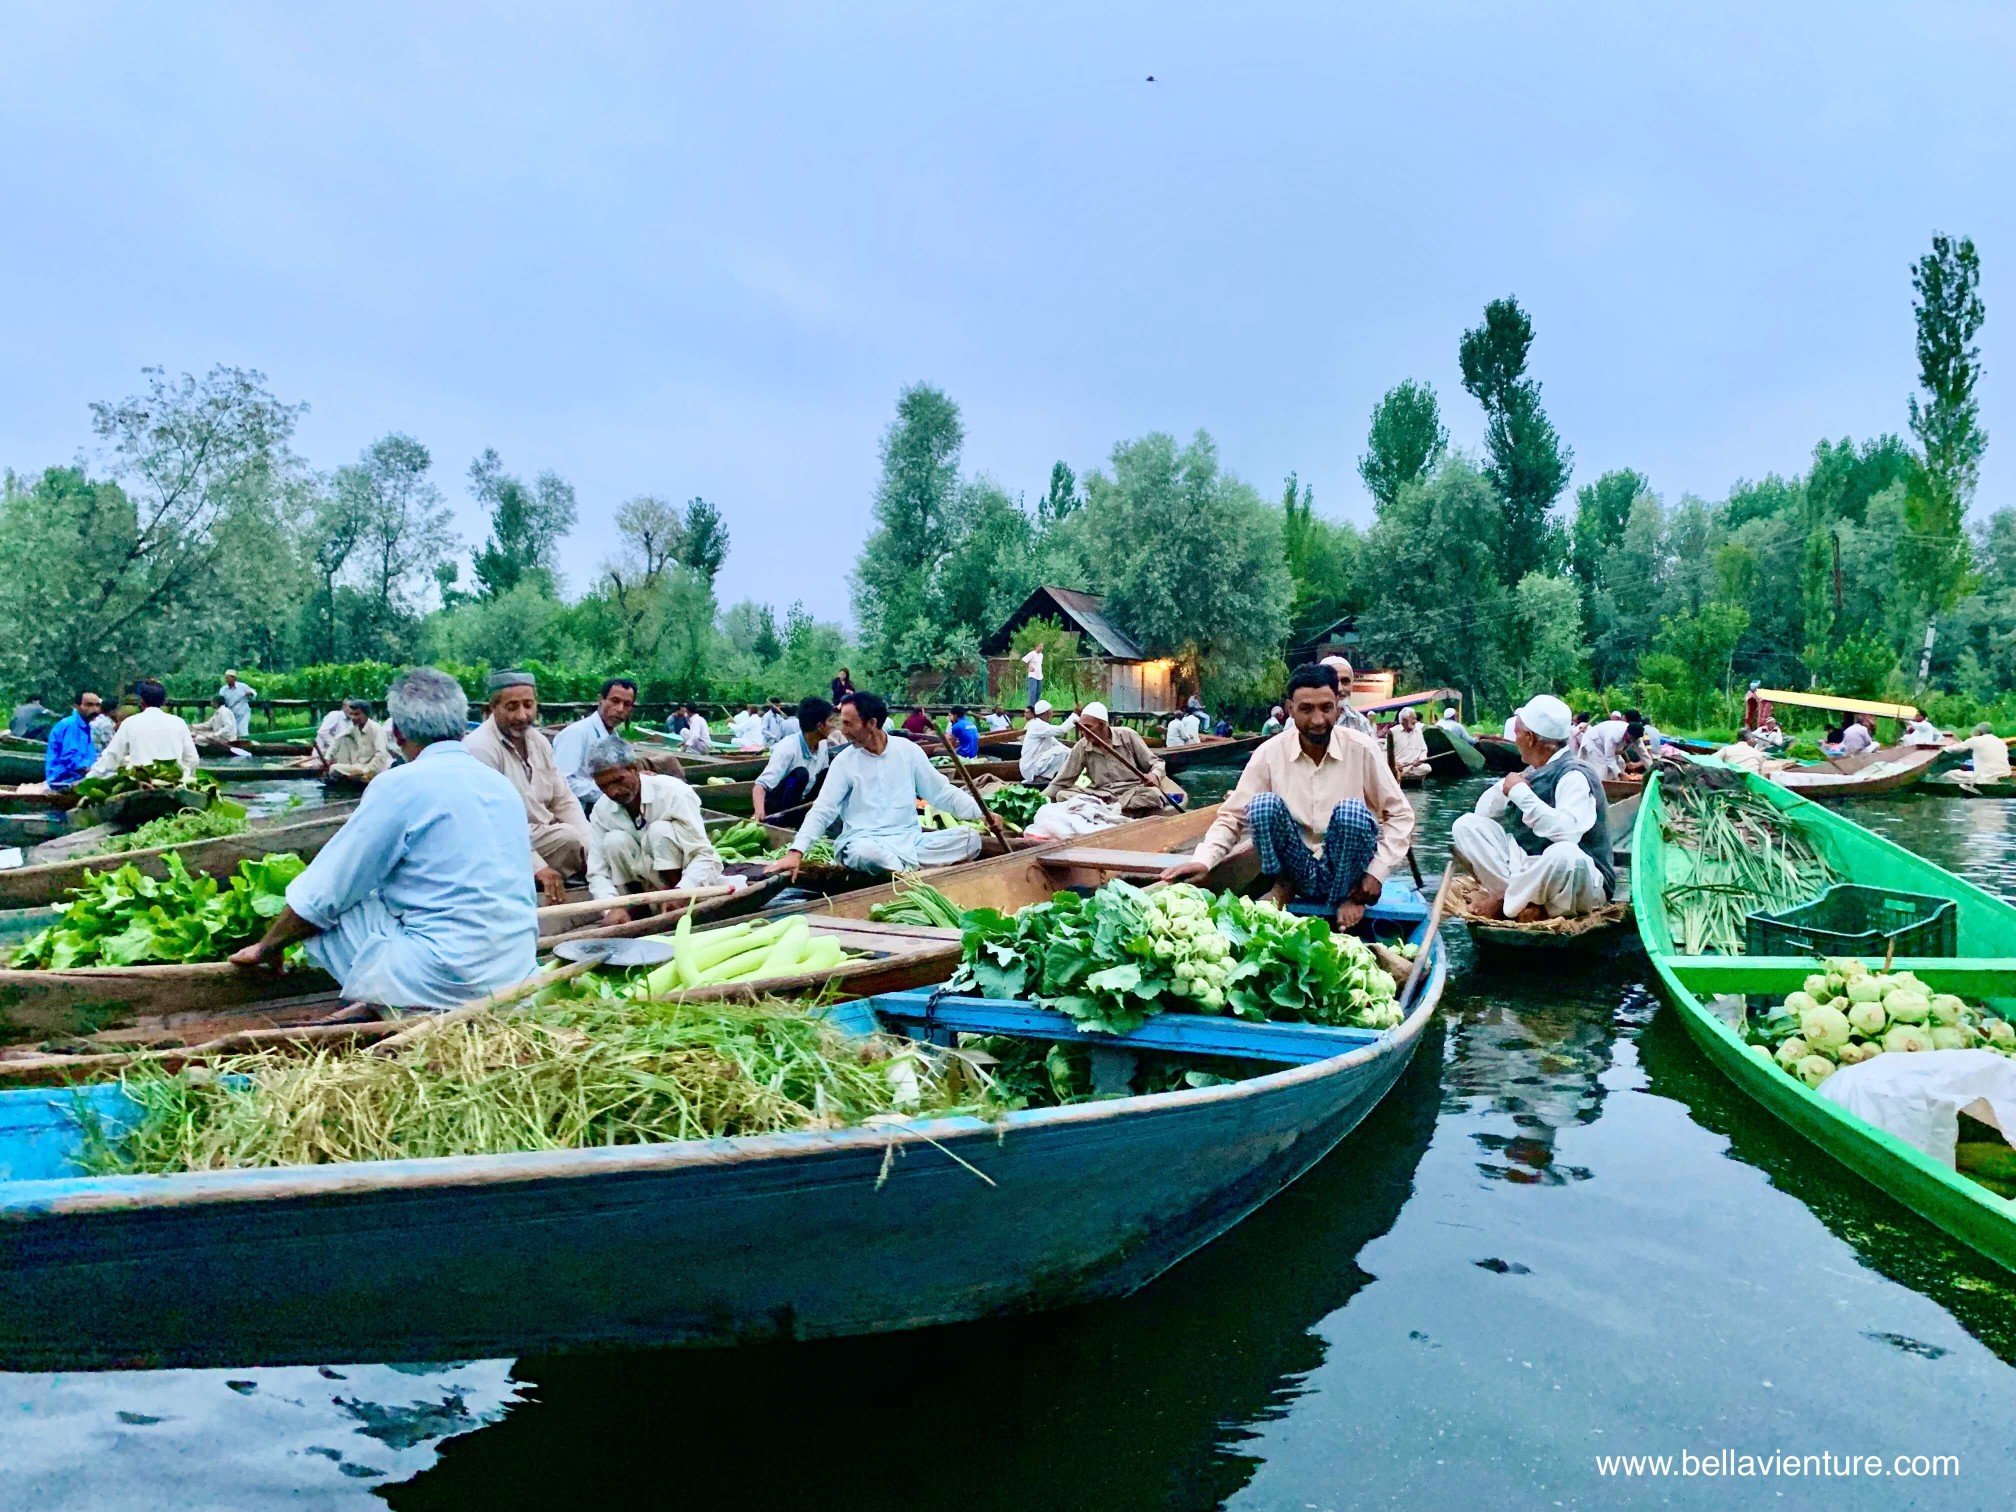 北北印 印度 India 喀什米爾 Kashmir 水上市集 Floating market 清晨